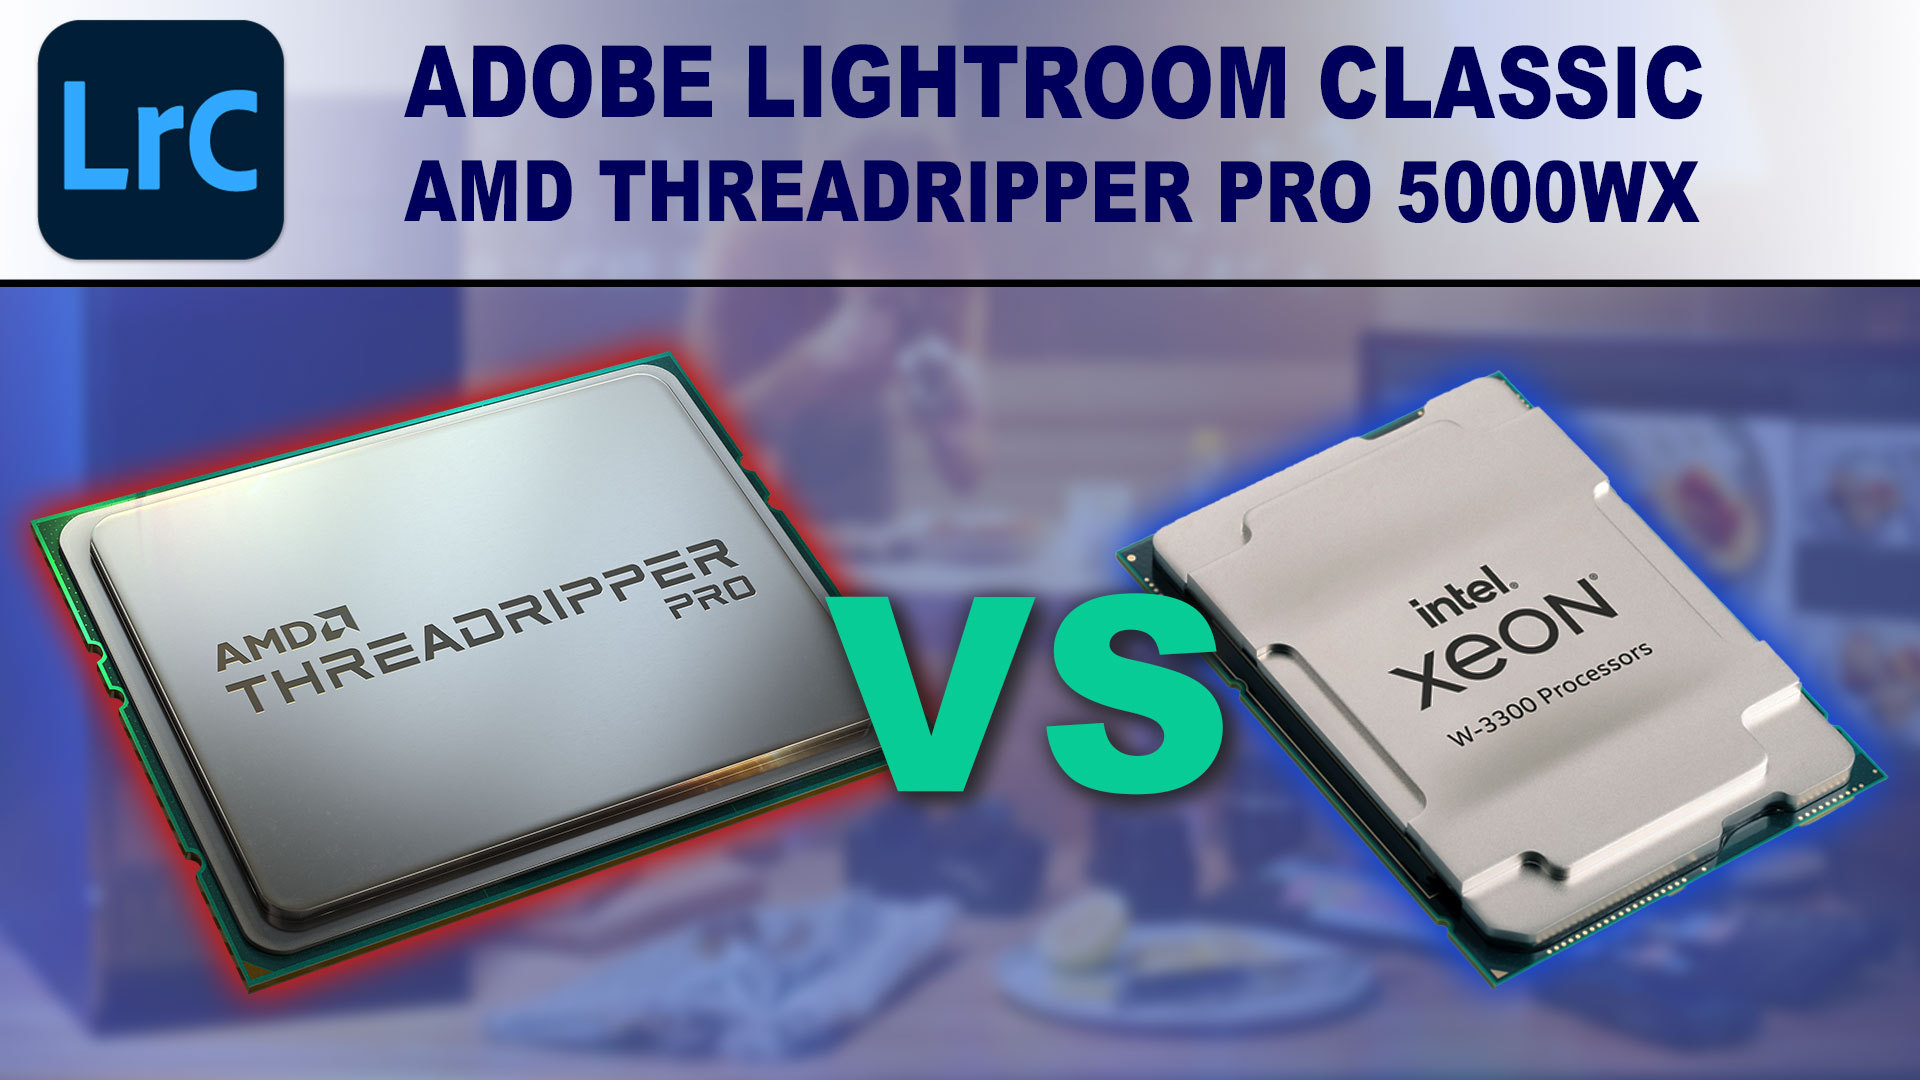 Adobe Lightroom Classic: AMD Threadripper Pro 5000 WX-Series vs Intel Xeon W-3300